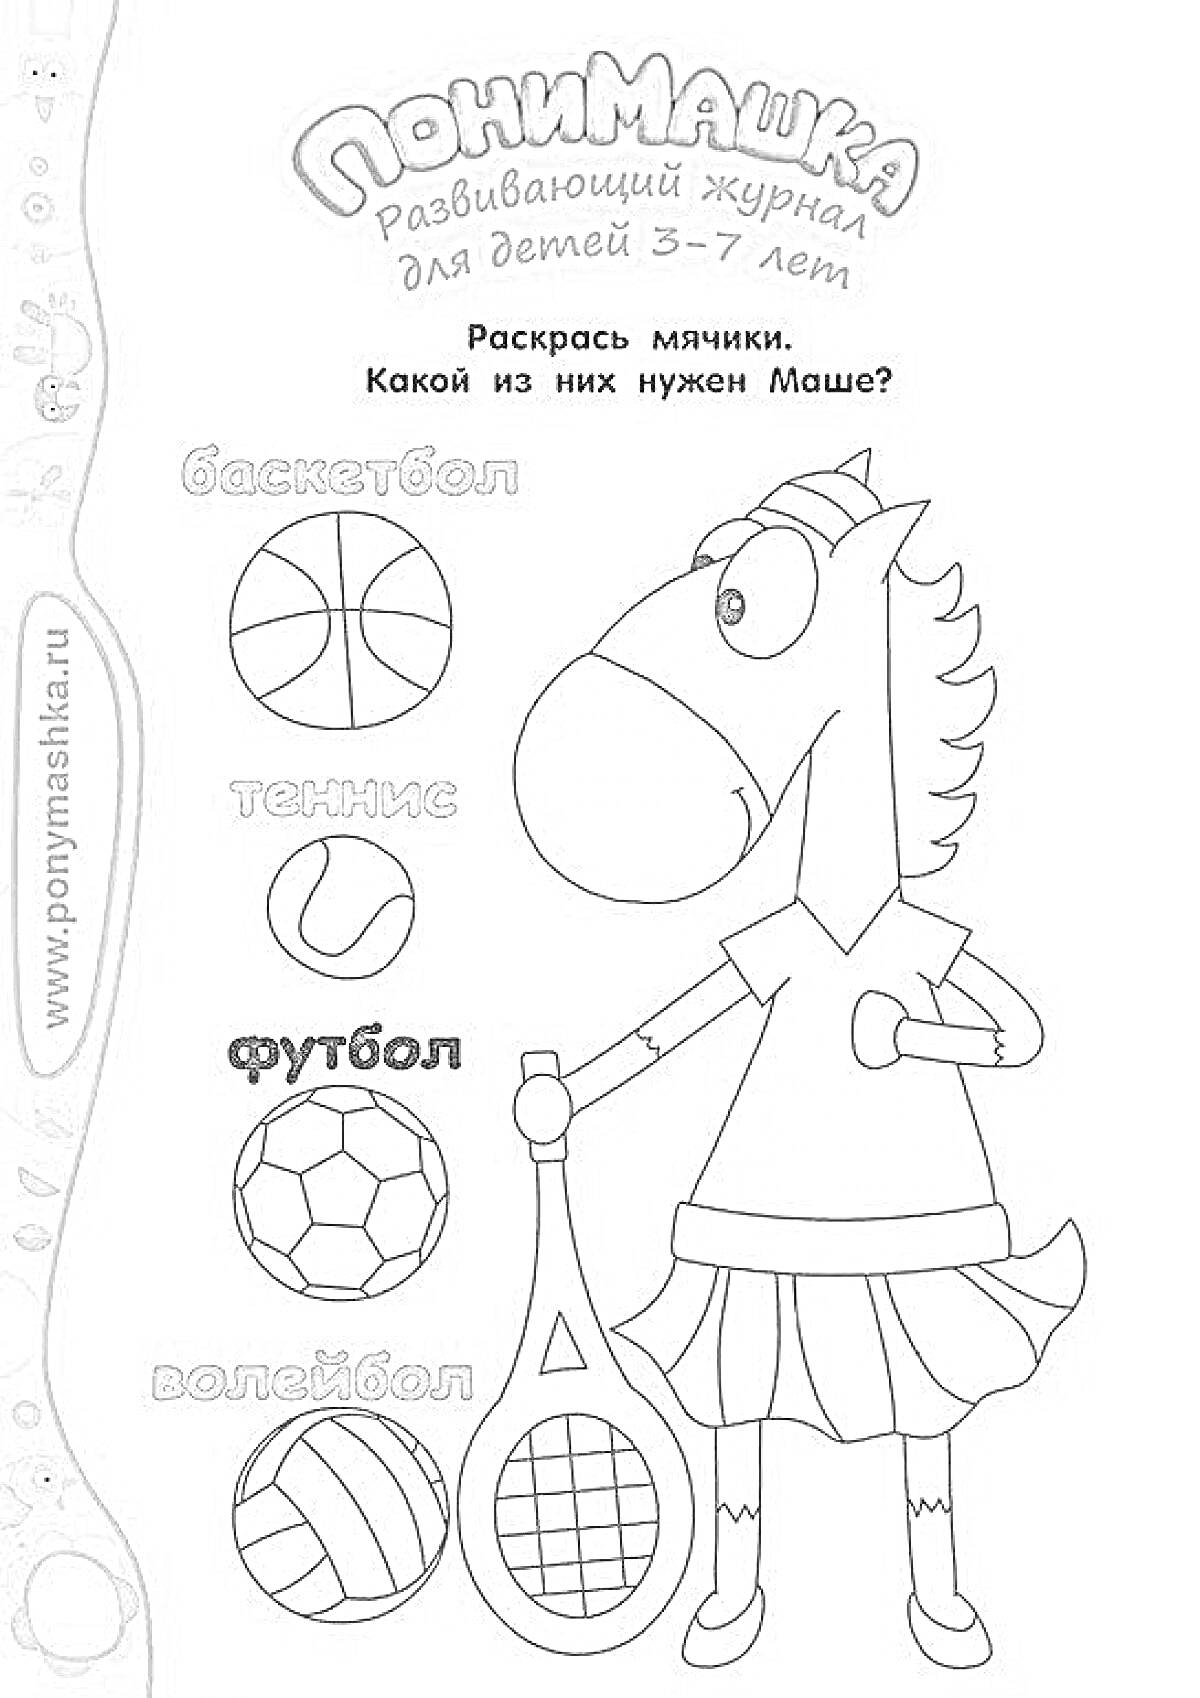 ПониМашка развивающий журнал для детей 3-7 лет - Раскрась мячики. Какой из них нужен Маше? Баскетбол, теннис, футбол, волейбол